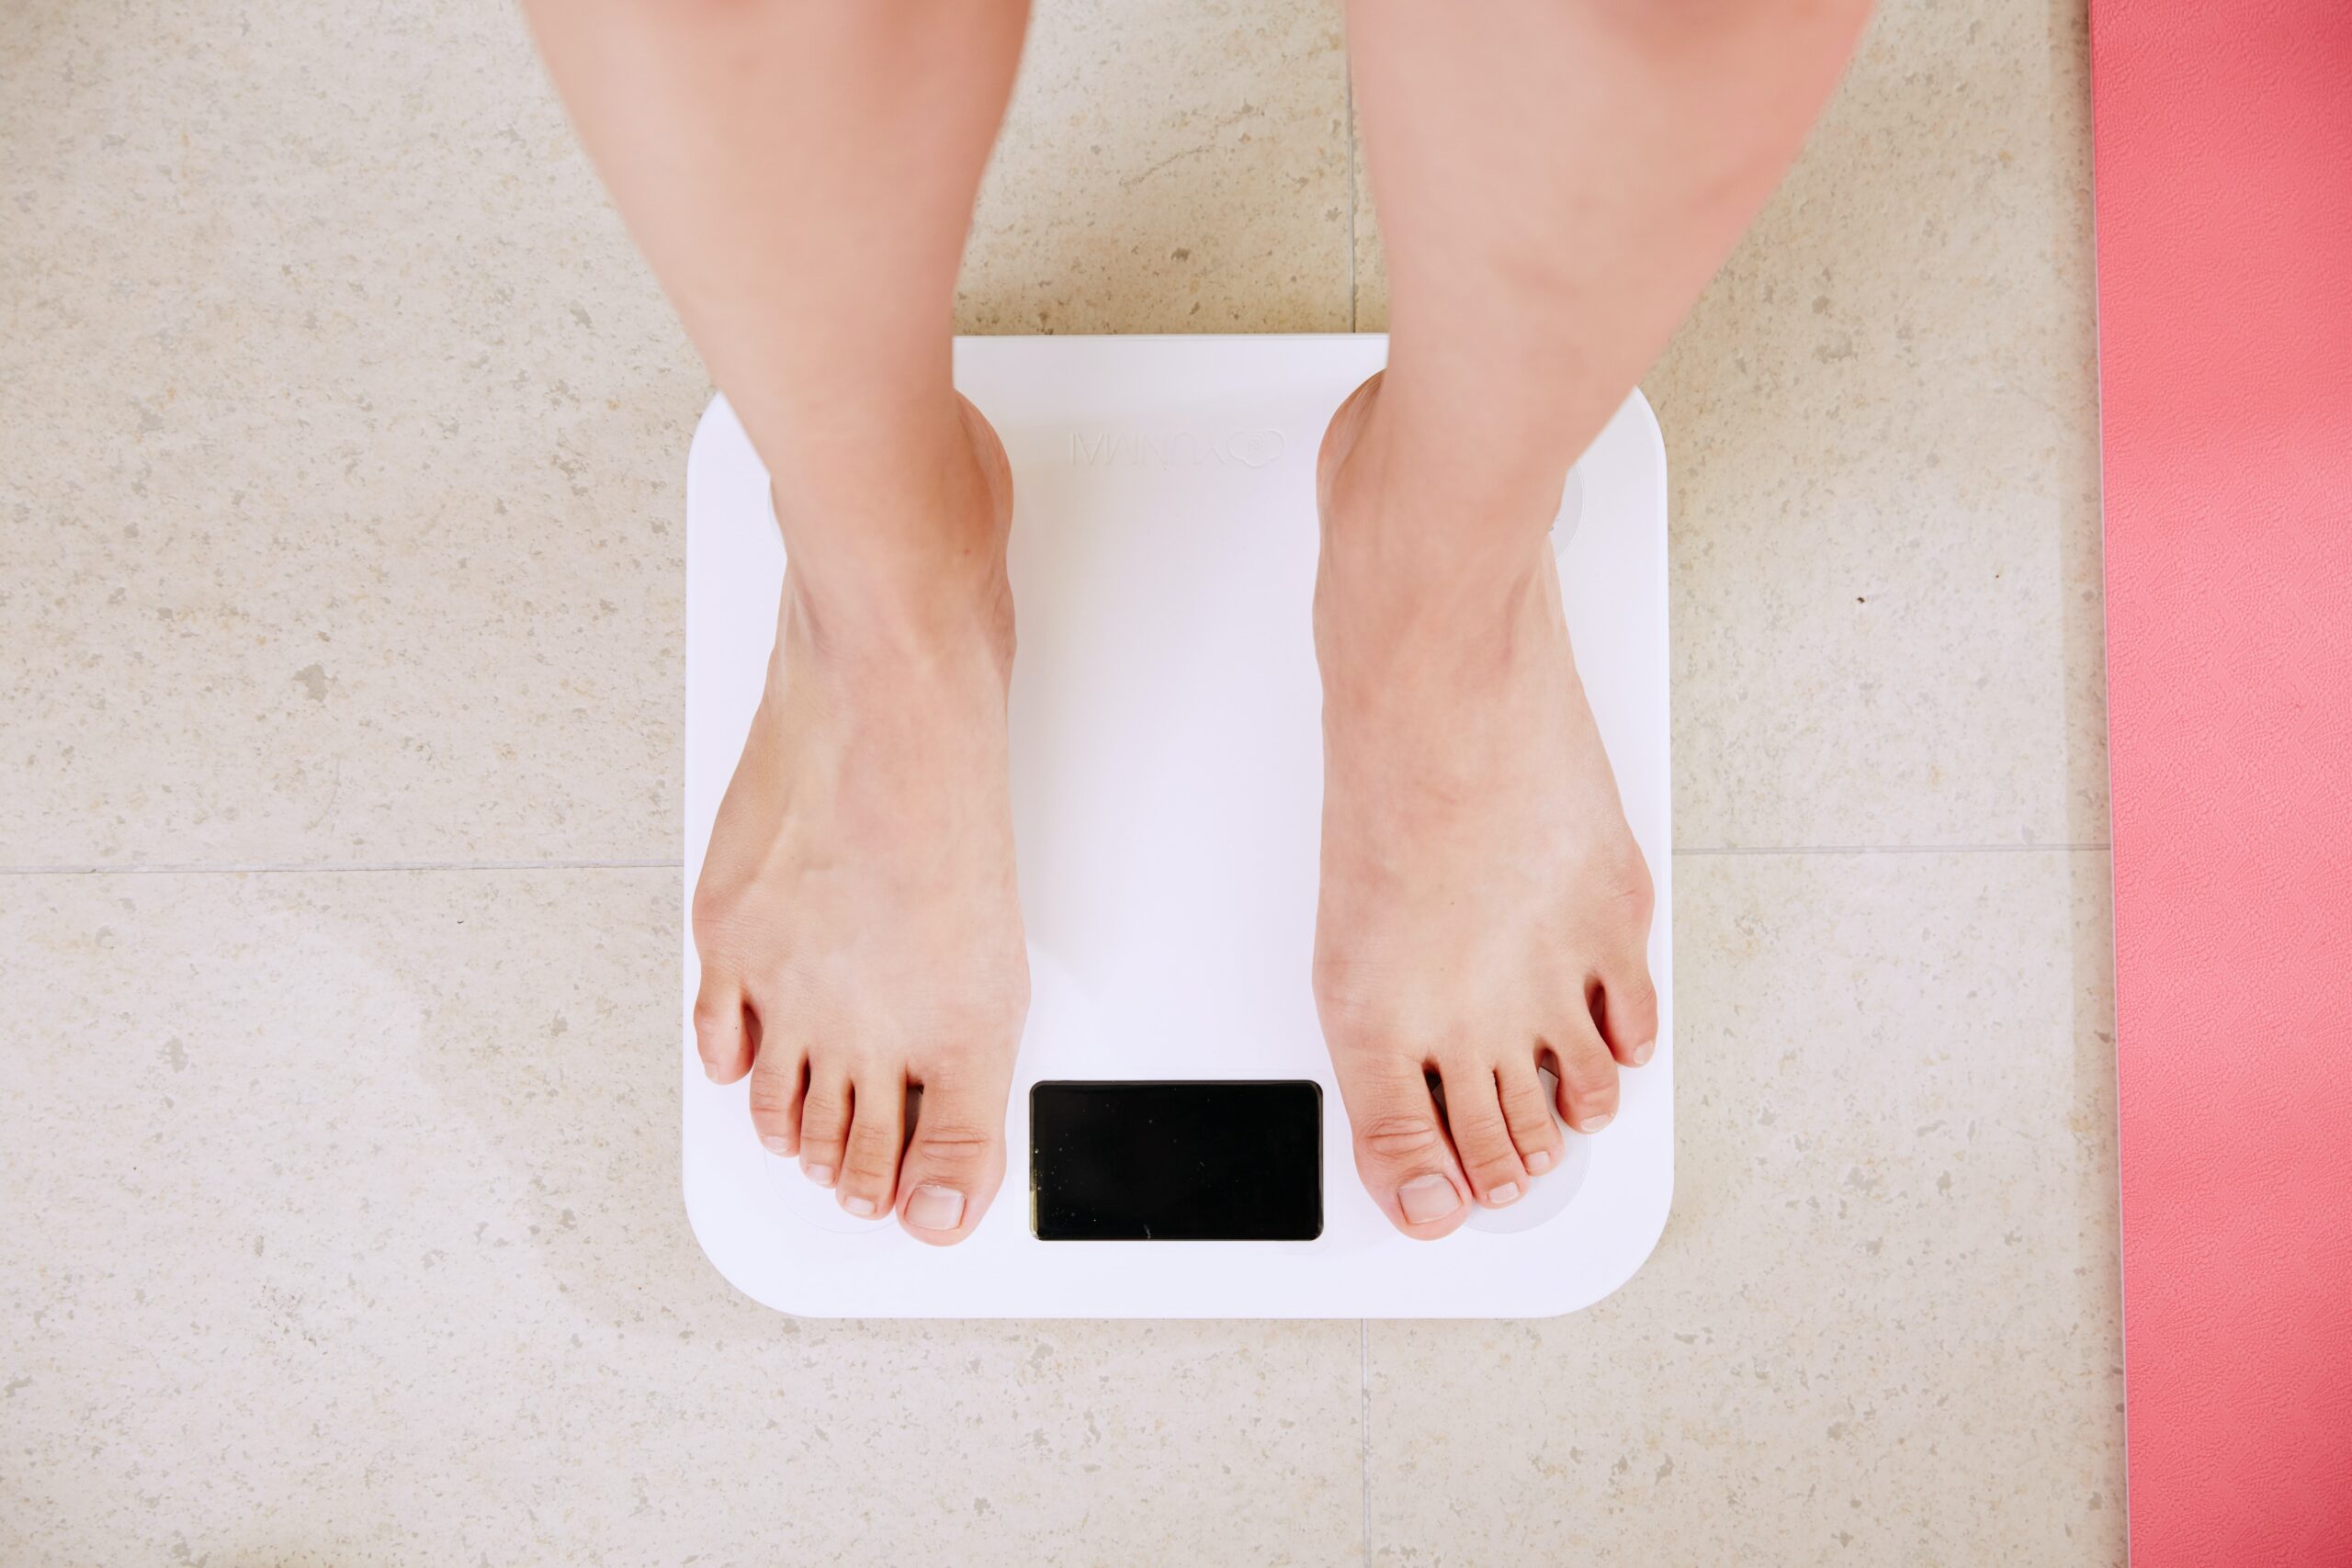 Obésité et surpoids : près d’un Français sur deux concerné. État des lieux, prévention et solutions thérapeutiques